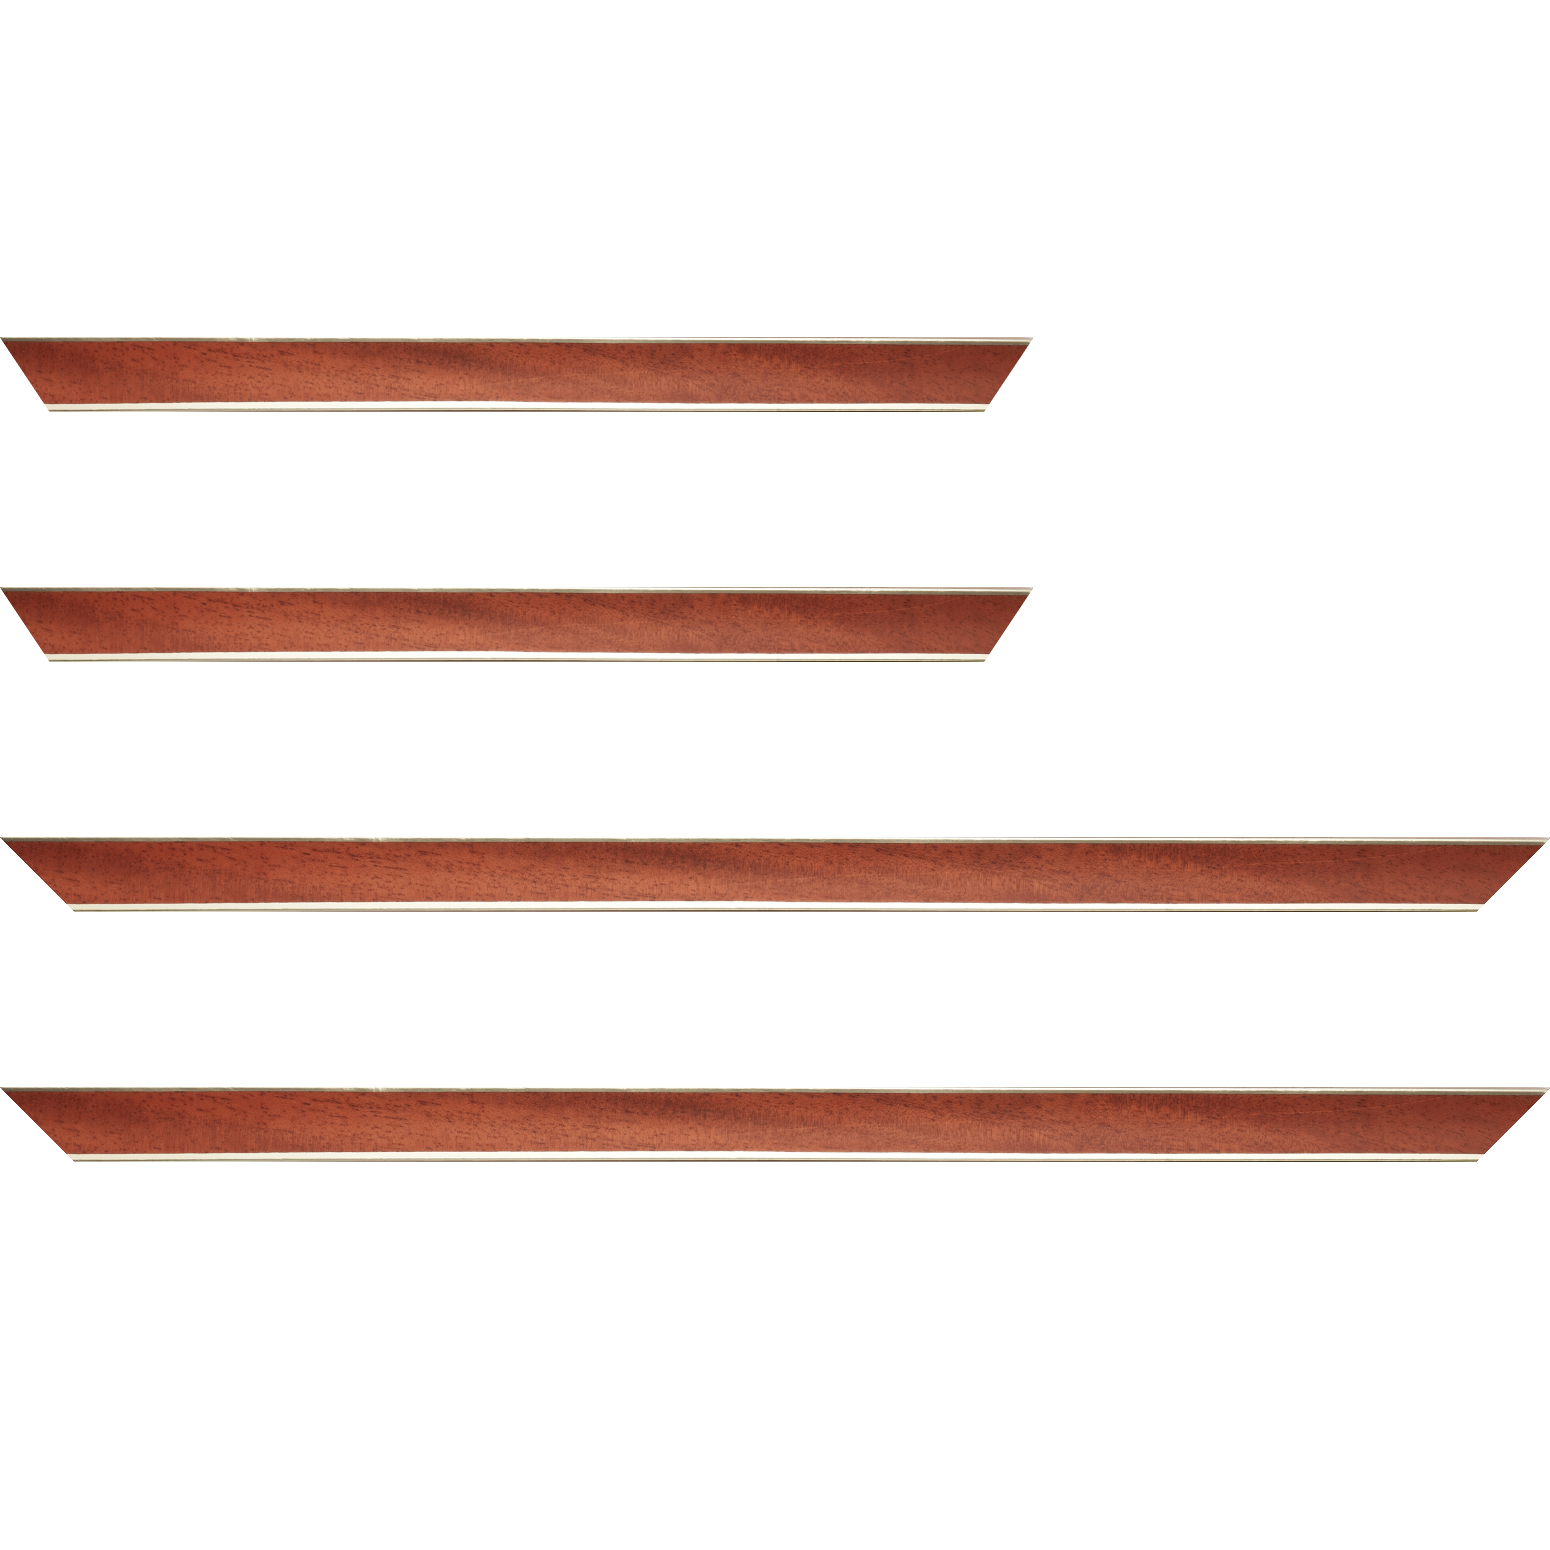 Baguette service précoupé Bois profil concave largeur 2.4cm couleur acajou  satiné  filet argent de chaque coté (pore du bois apparent)